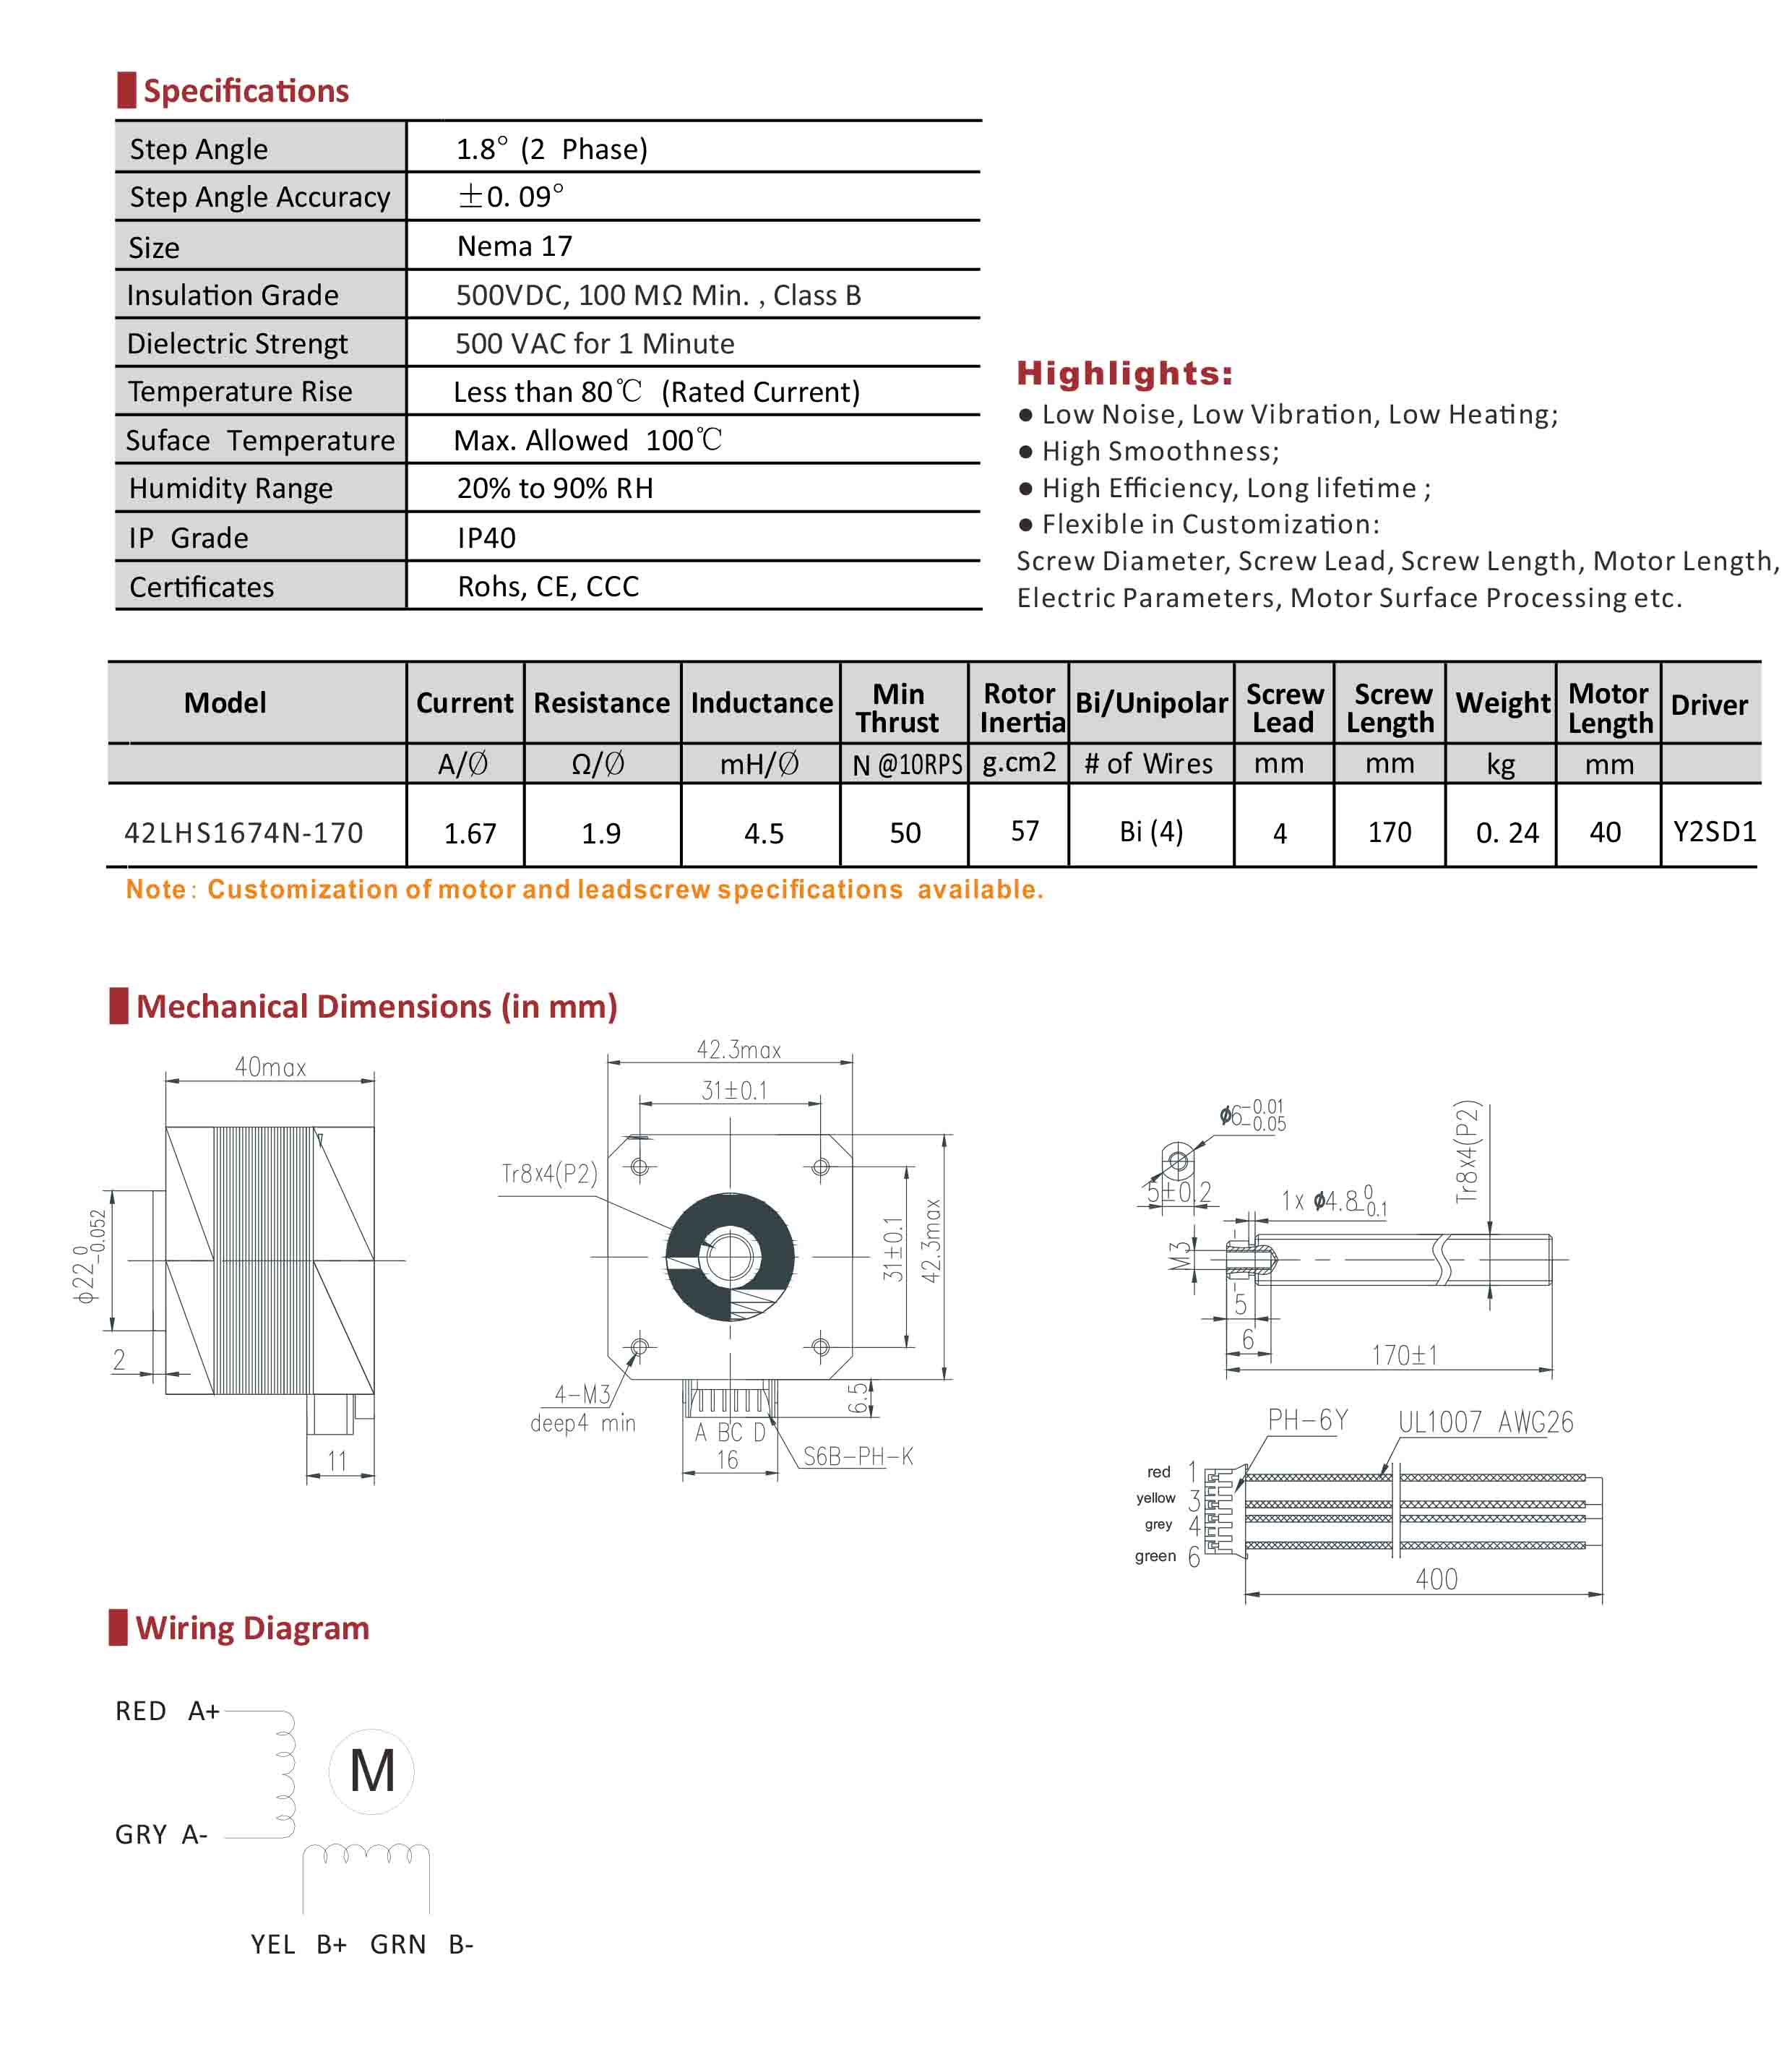 42LHS1674N-170 No-captive Hybrid Linear Stepper Motor Data Sheet.jpg